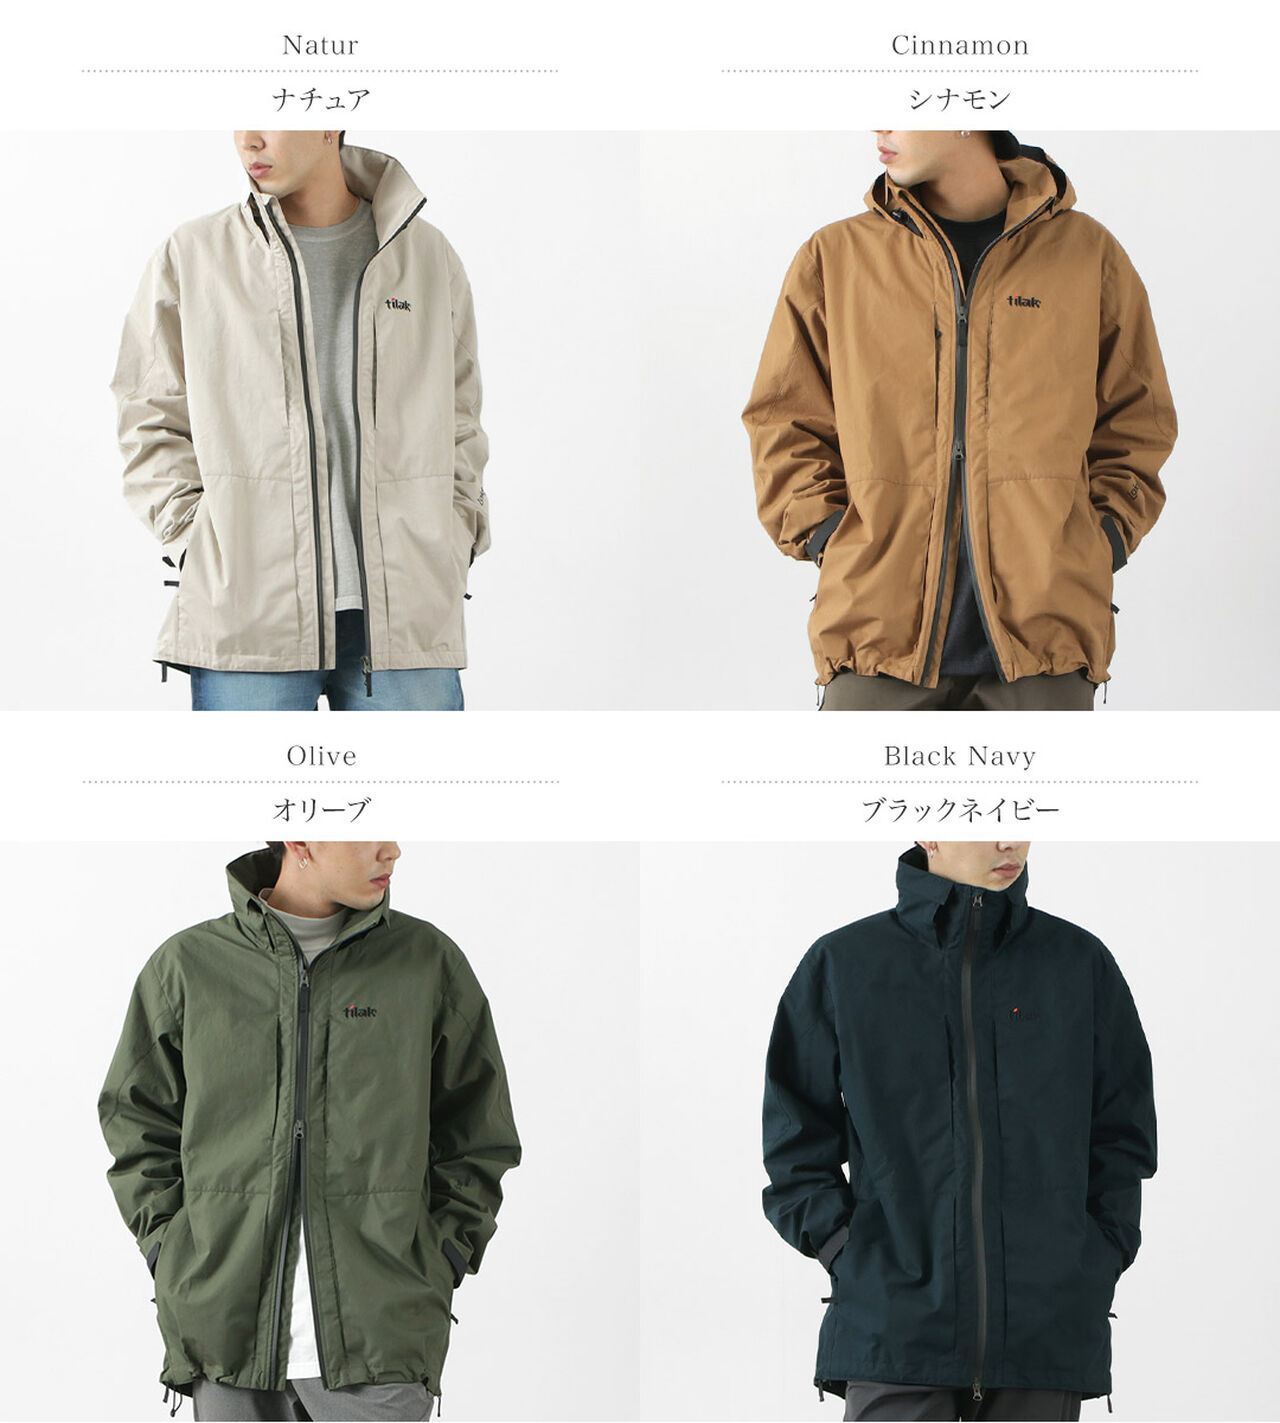 Review: Tilak - Loke Ventile outdoor jacket - Pine Survey